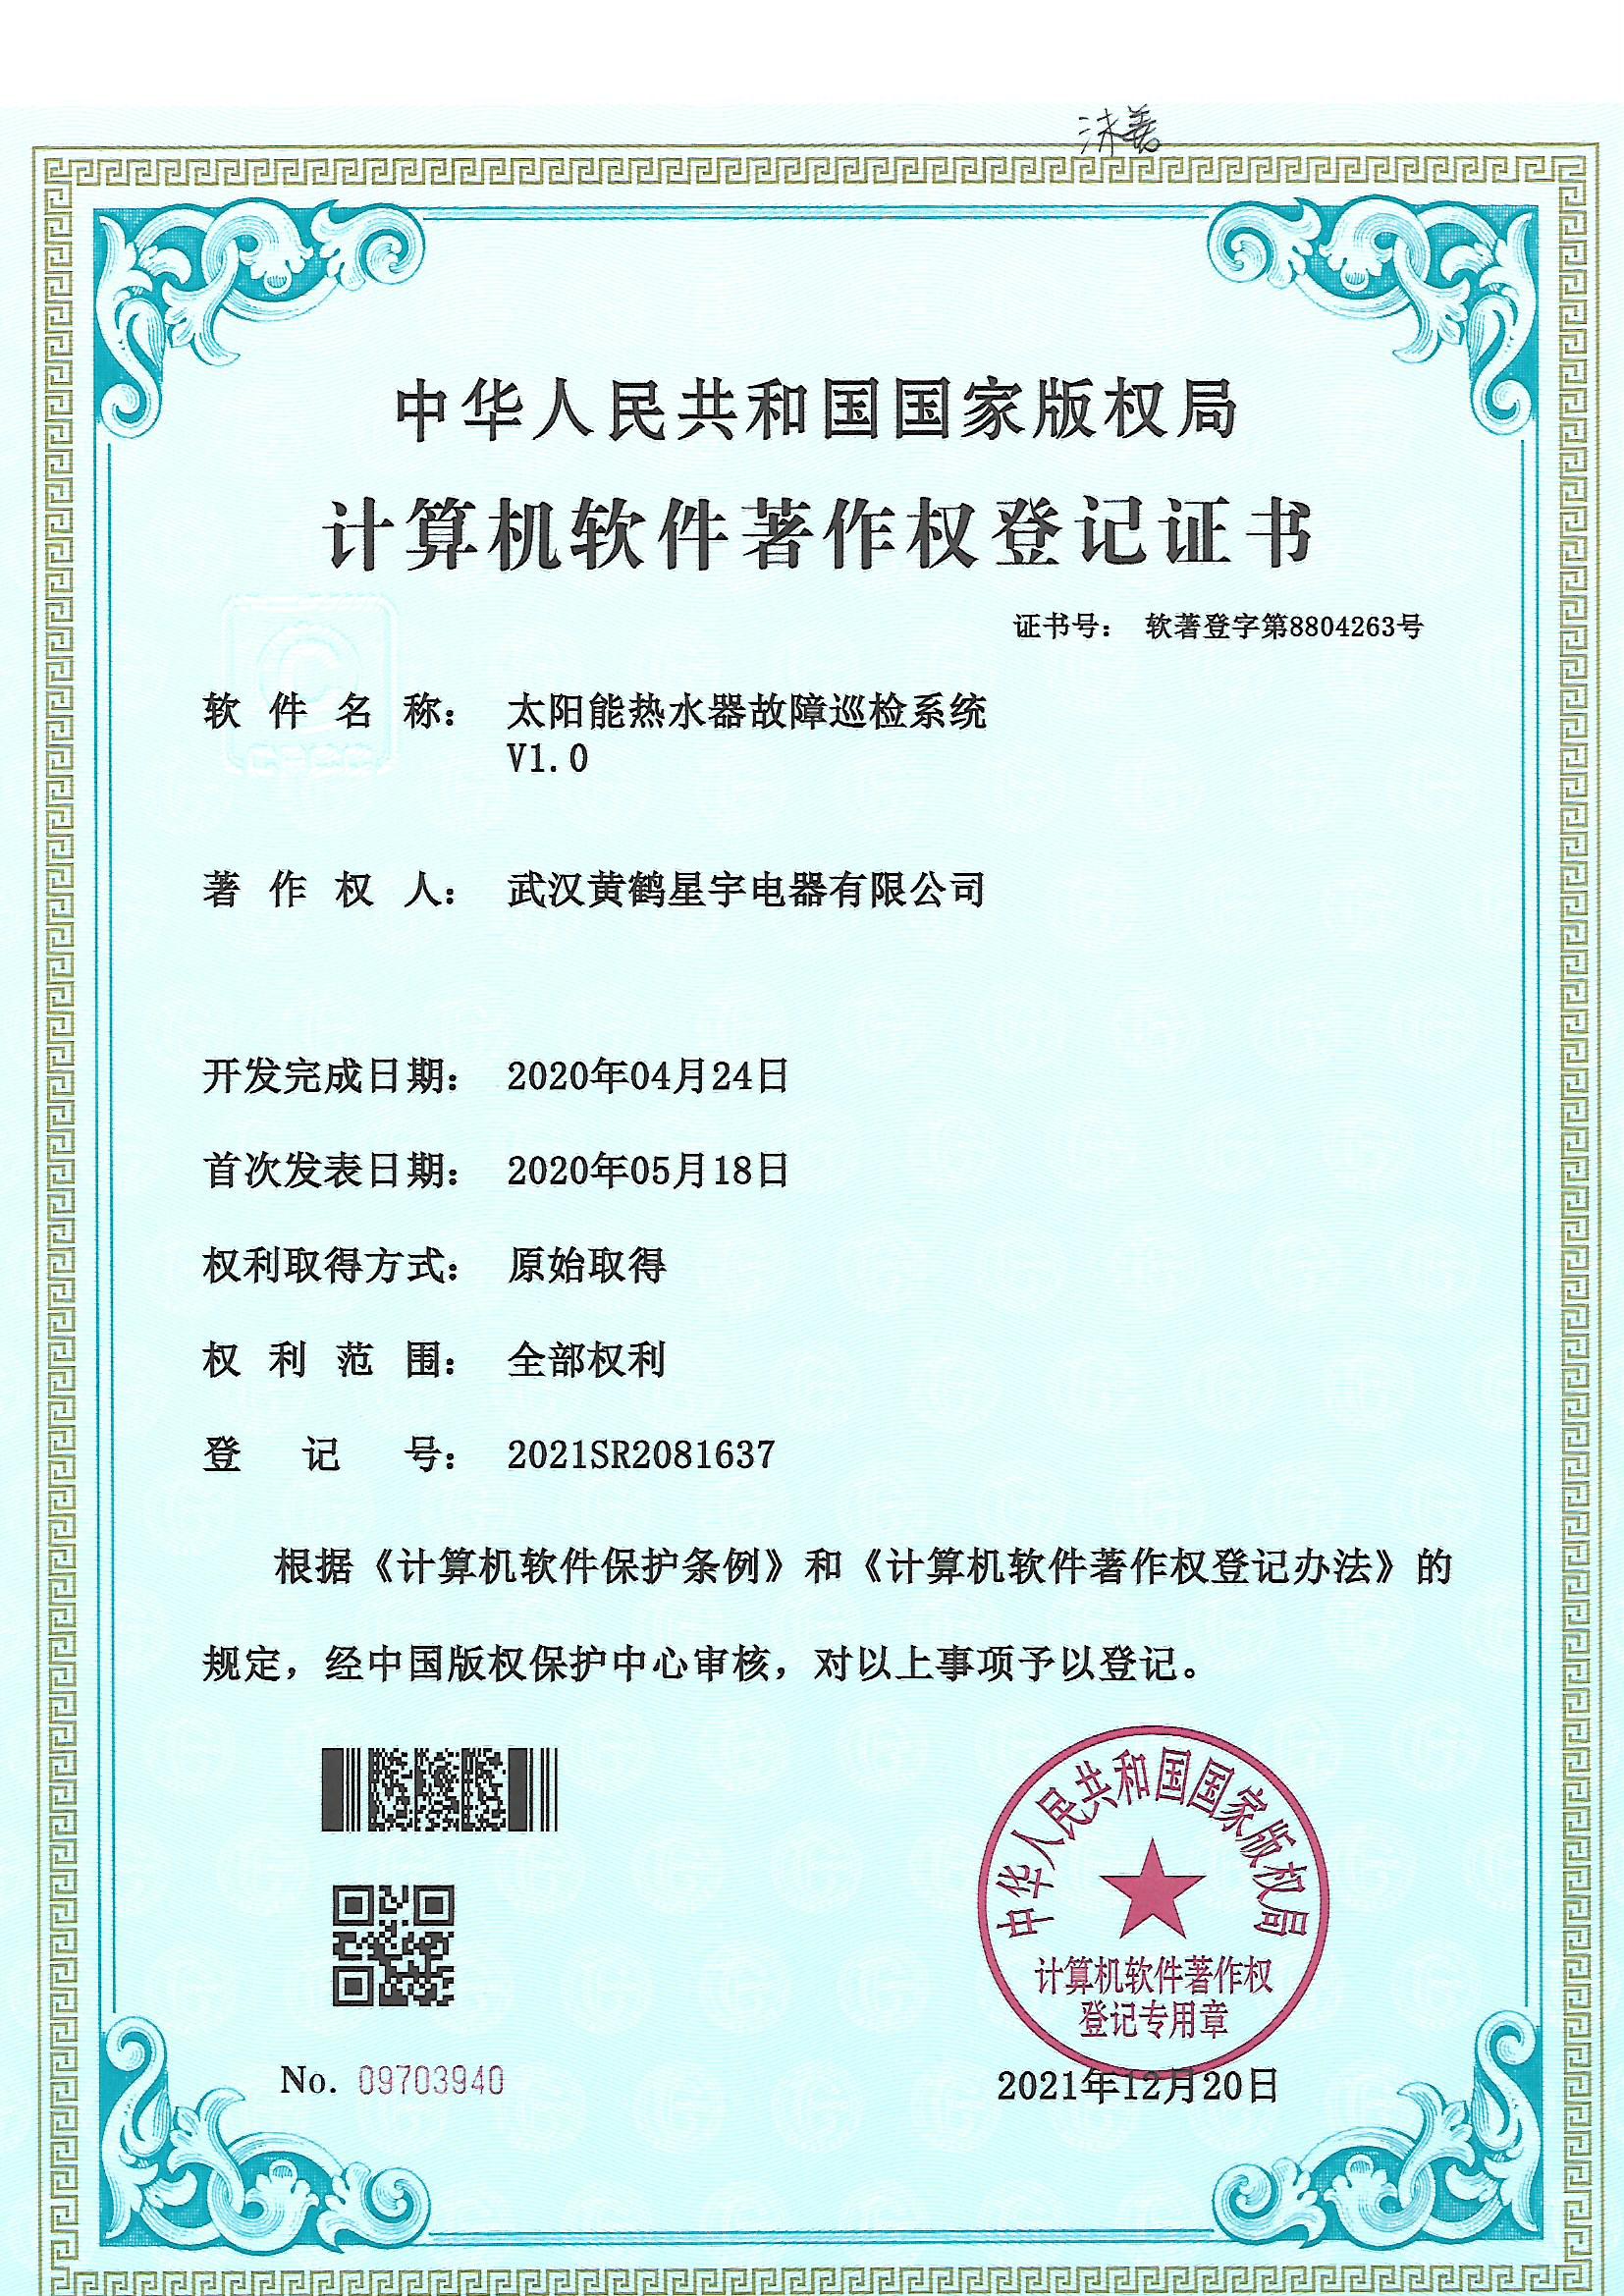 武漢QG999钱柜777電器有限公司--太陽能熱水器計算機軟件著作權登記證書